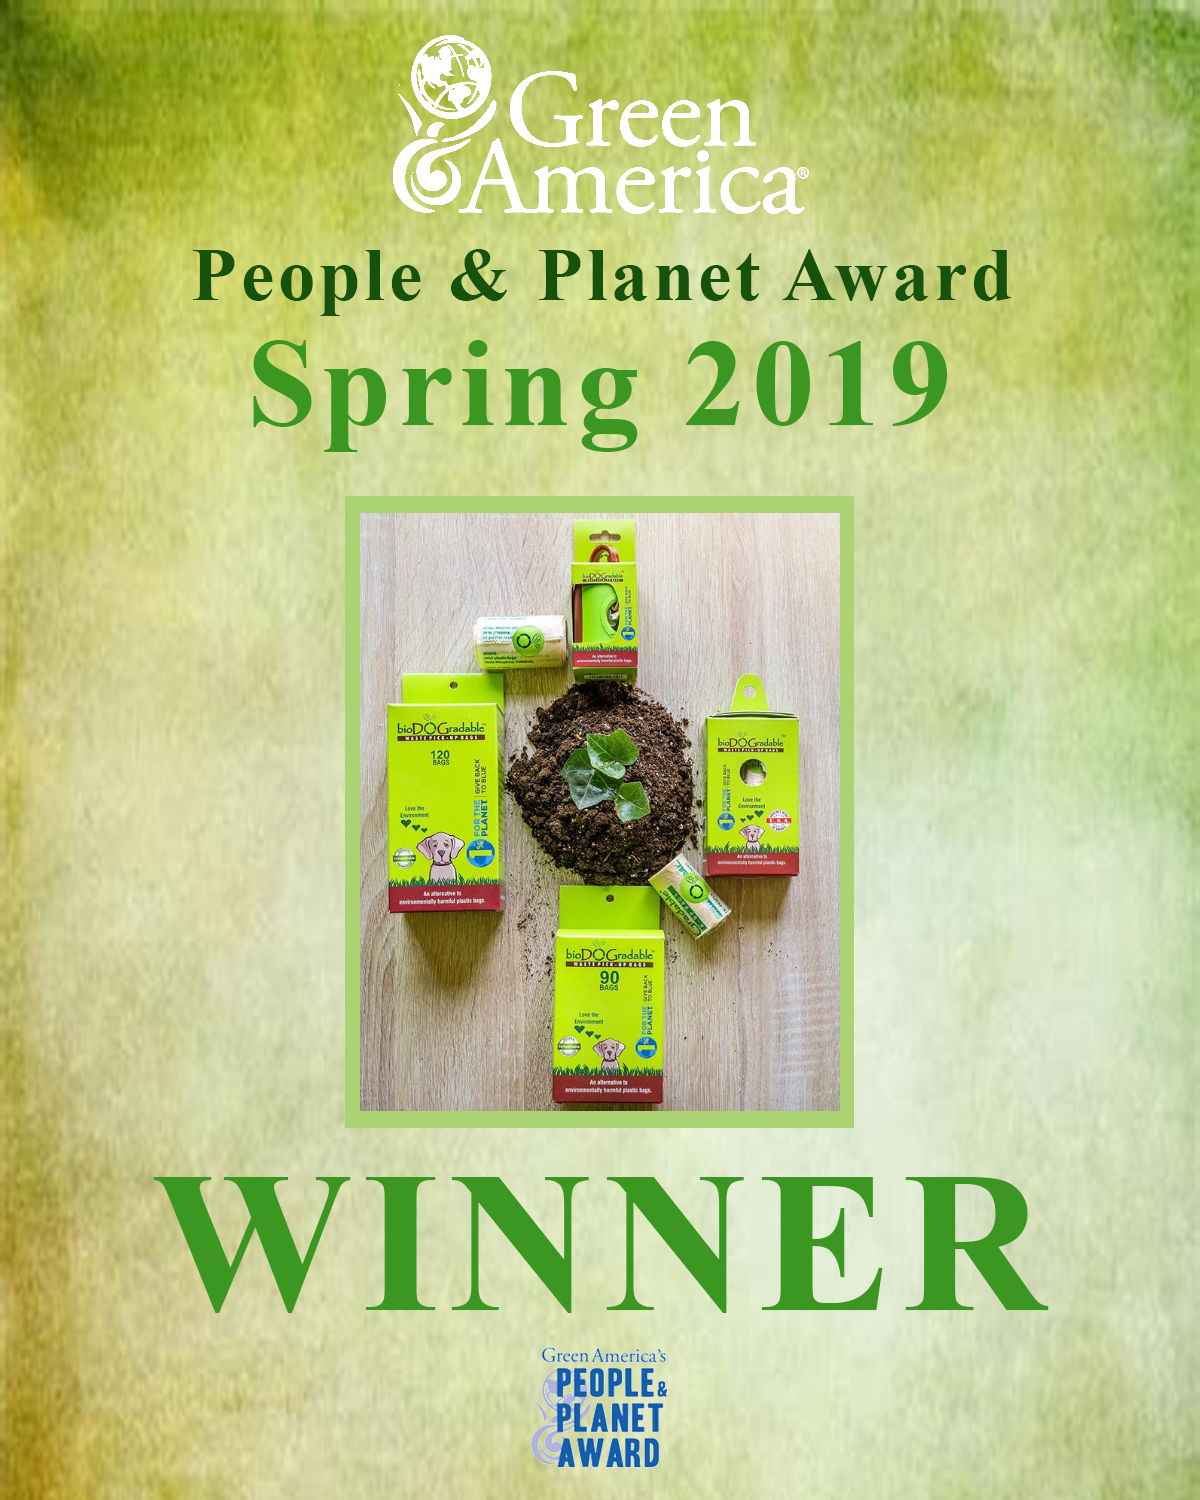 People & Planet Award Winner